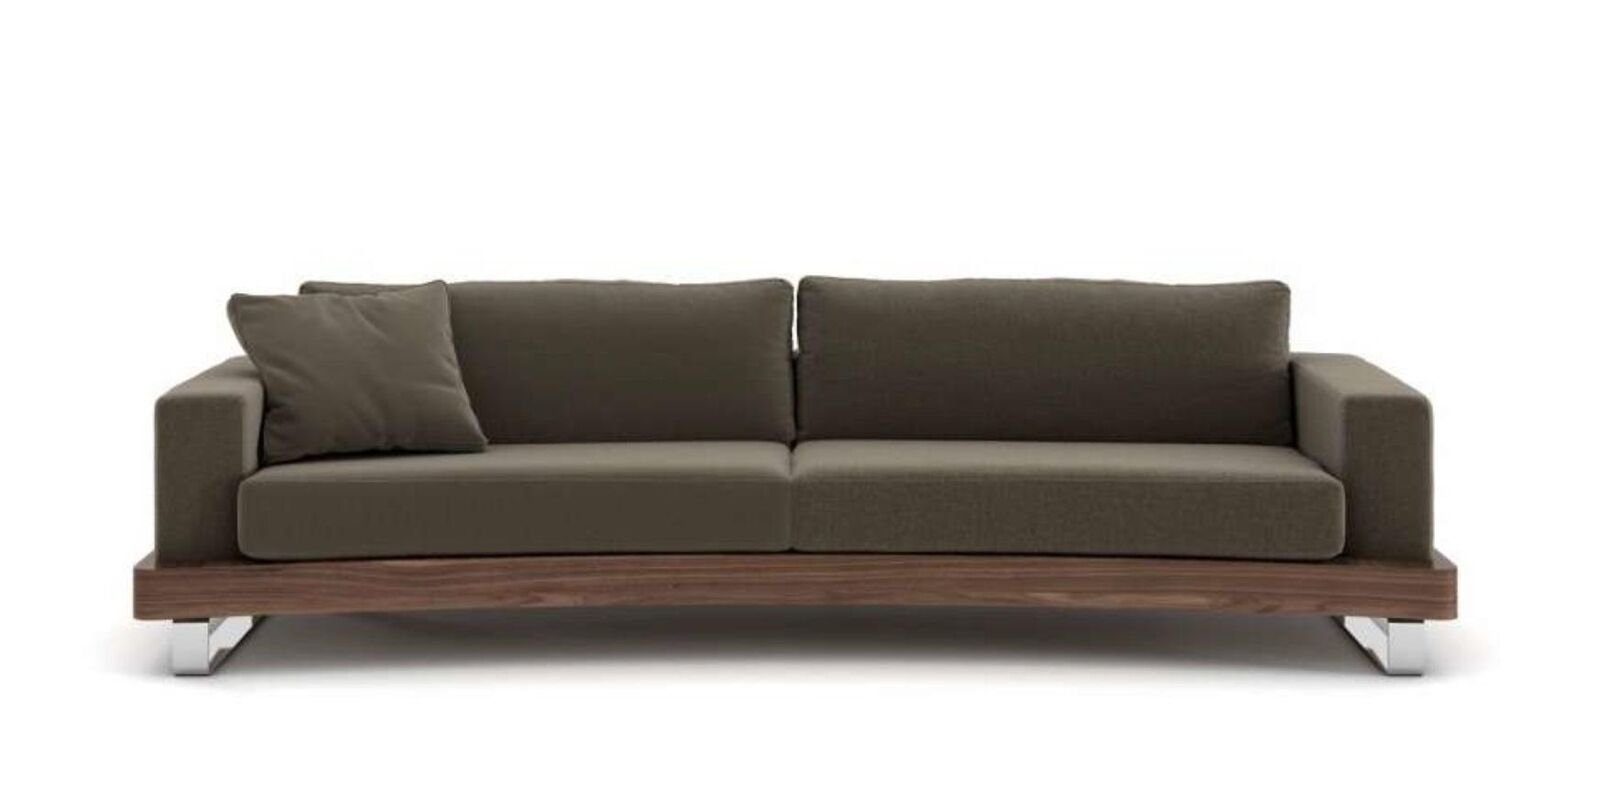 Zweisitzer 2 Sofas Dreisitzer Made Sofa JVmoebel in Europa Luxus, Couchen Sofa Teile, Wohnzimmergarnitu